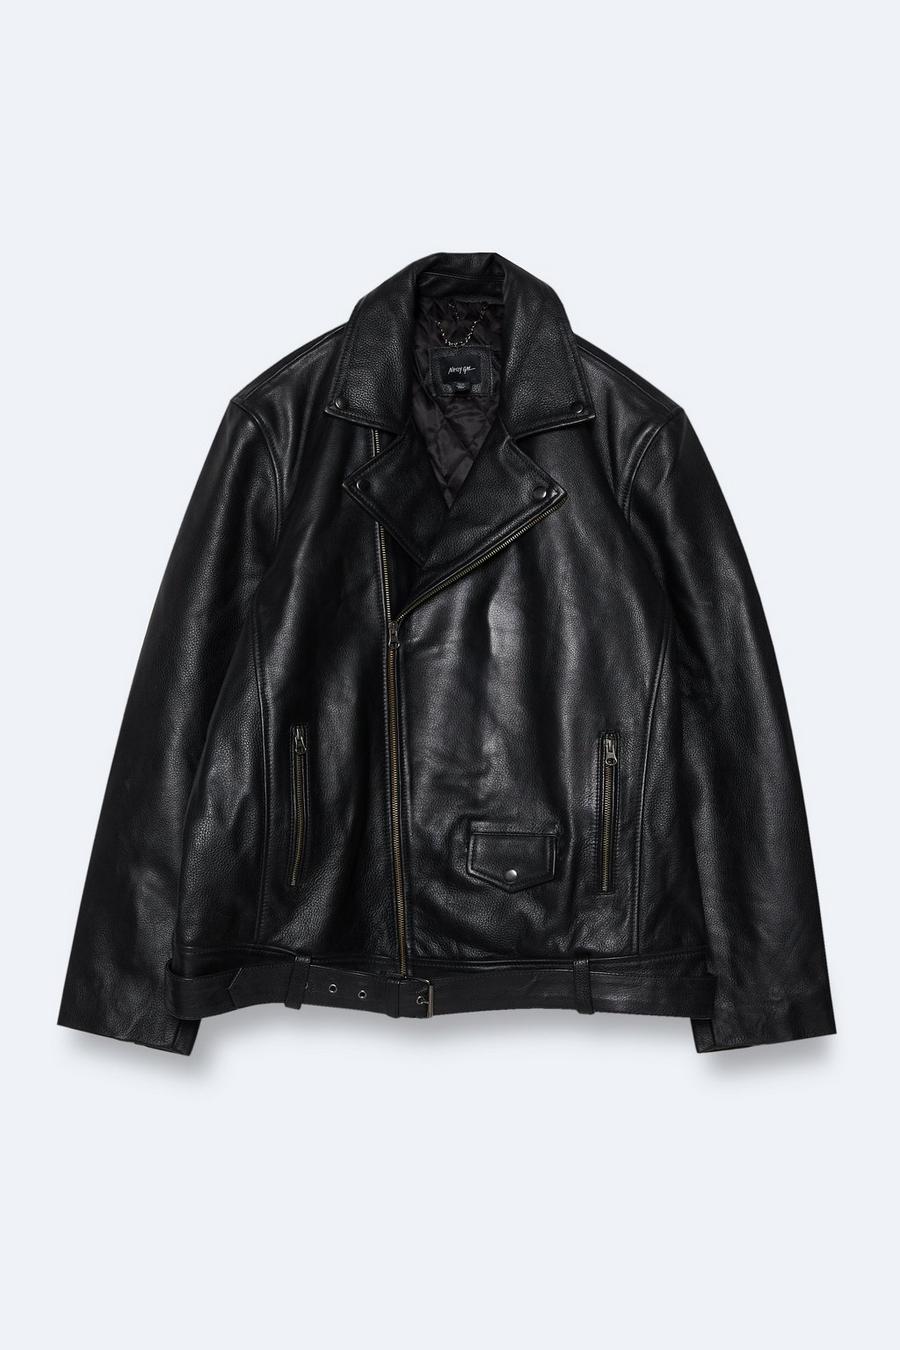 Plus Size Real Leather Boyfriend Biker Jacket